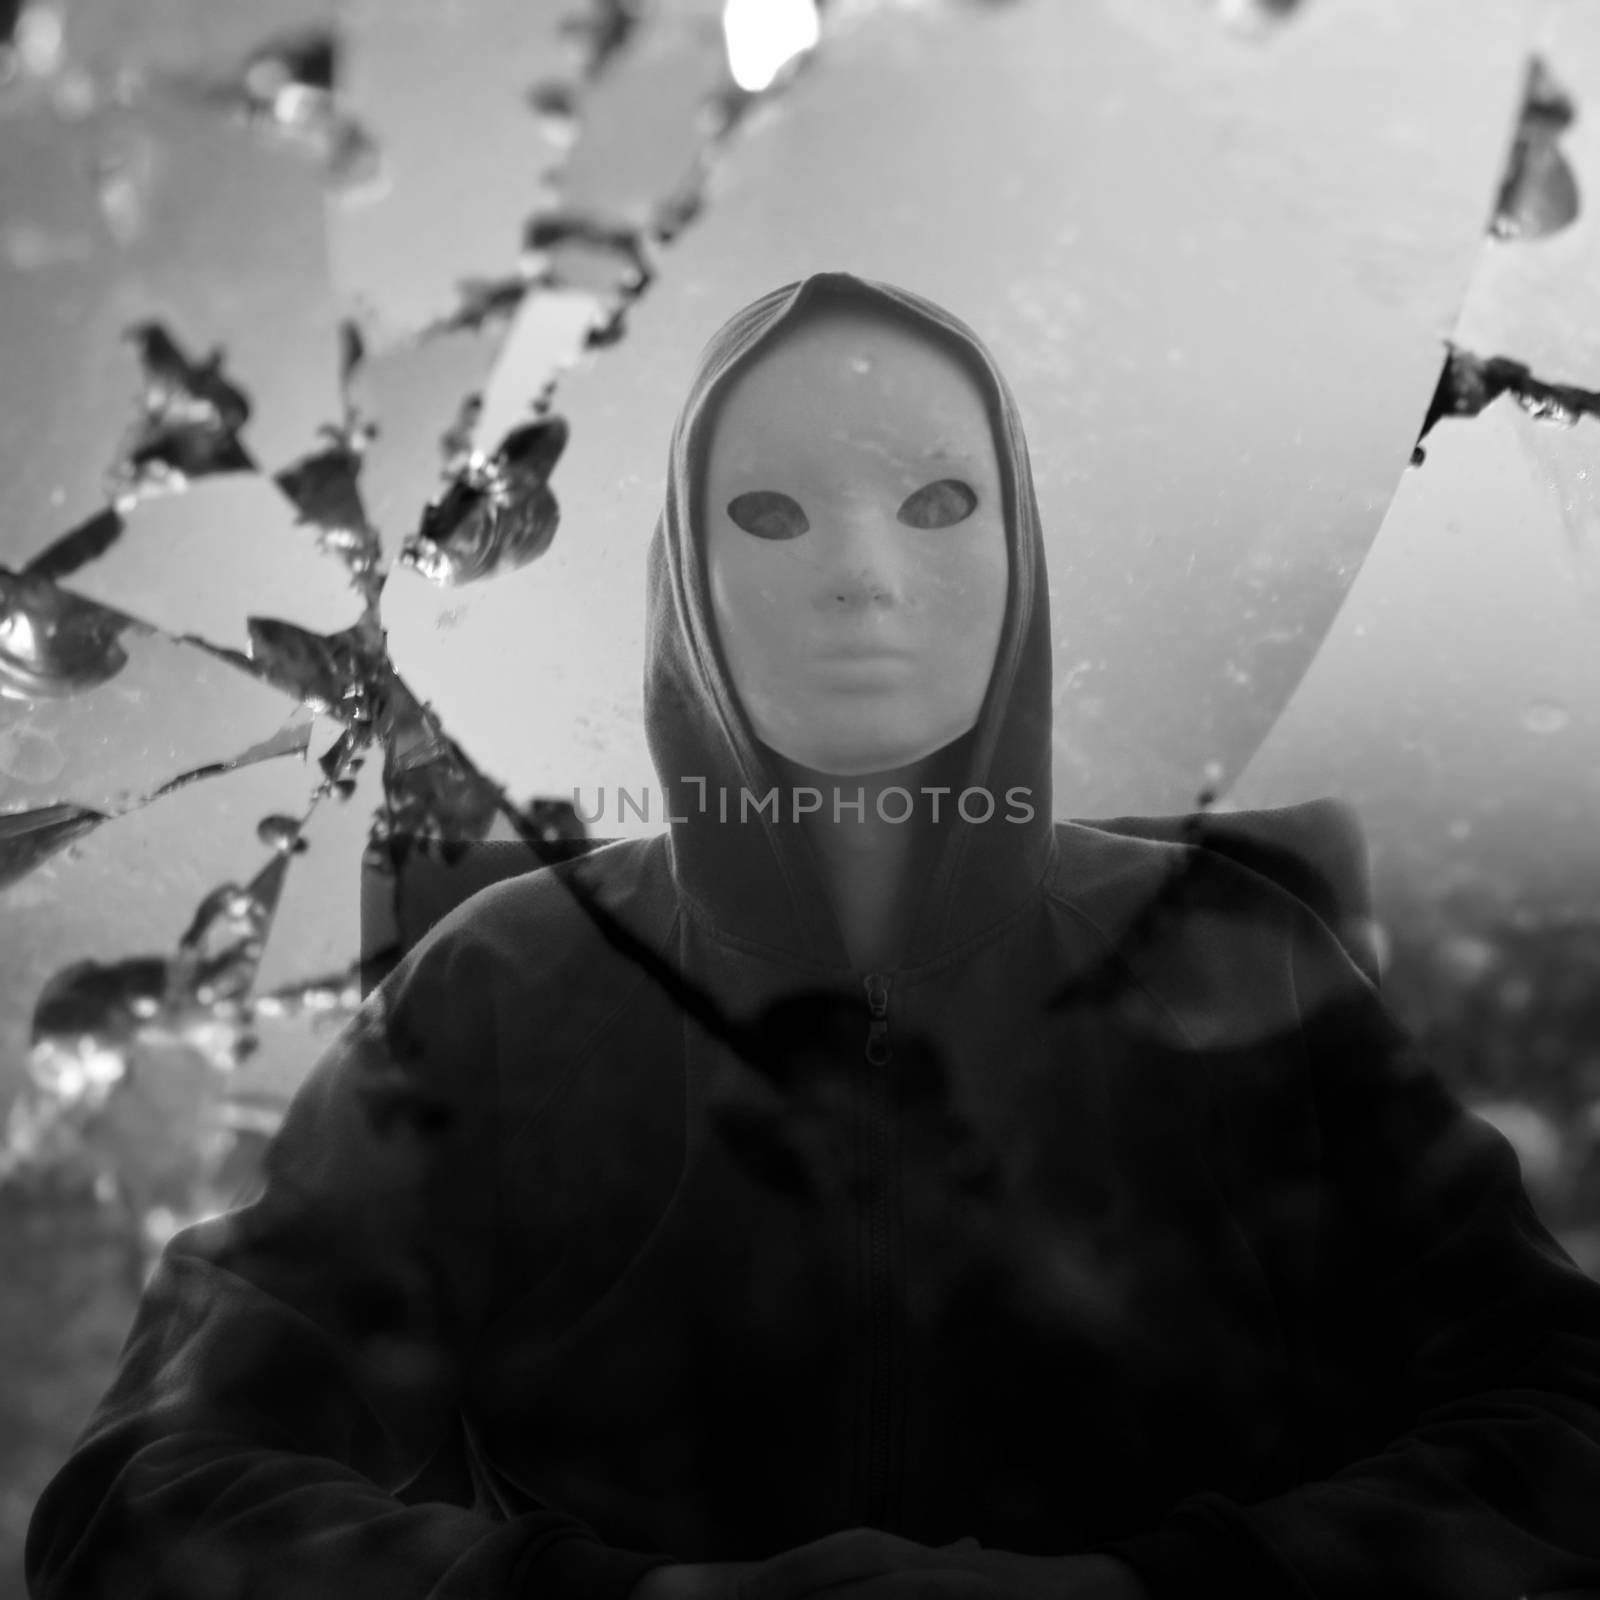 masked figure broken mirror by sirylok